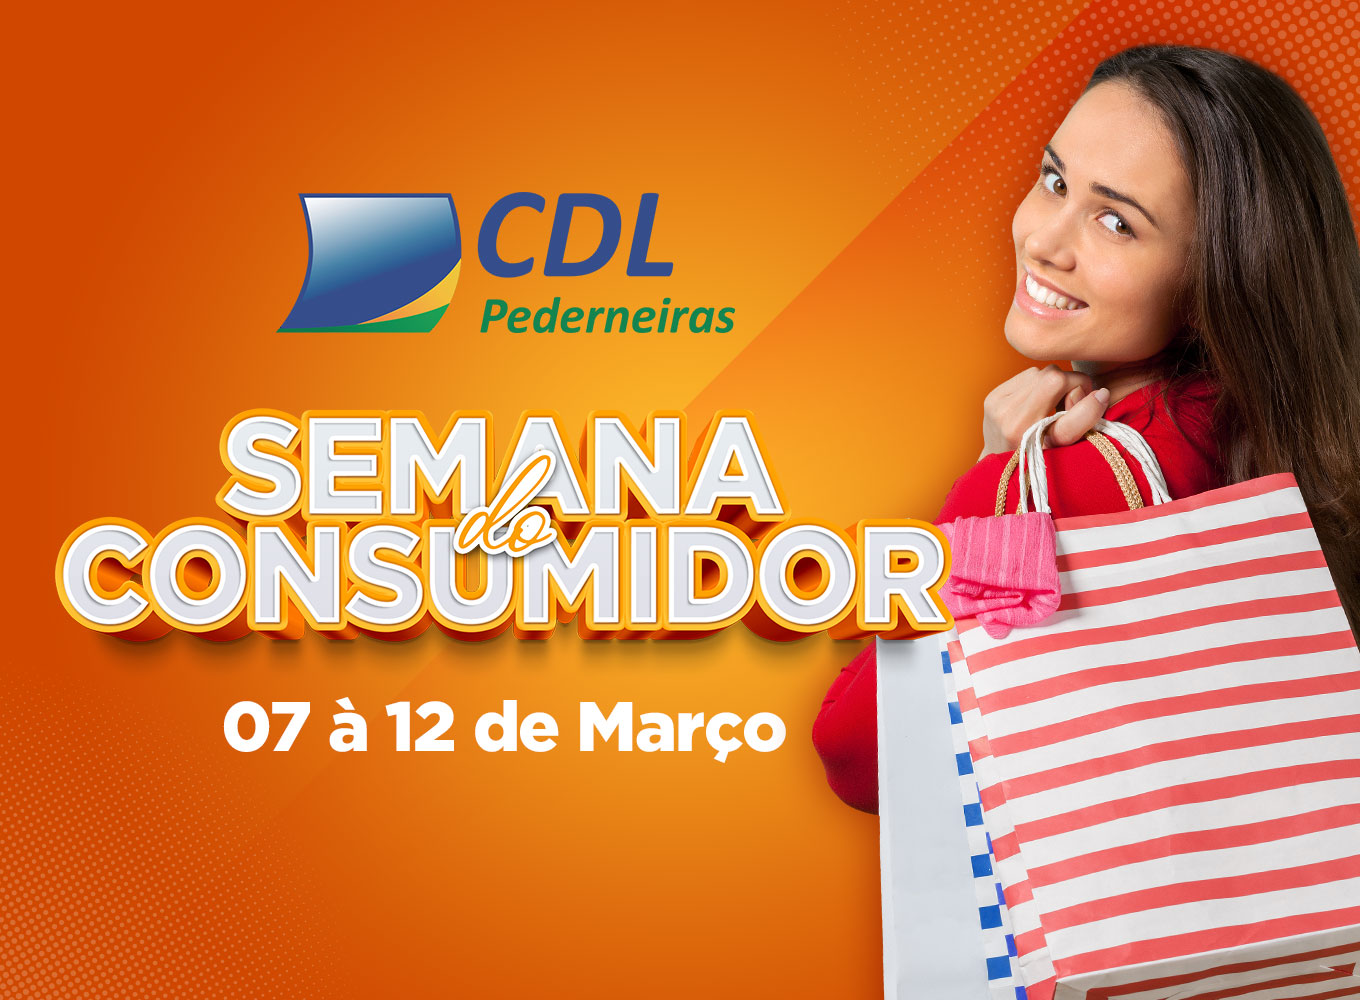 Semana do Consumidor I CDL Pederneiras